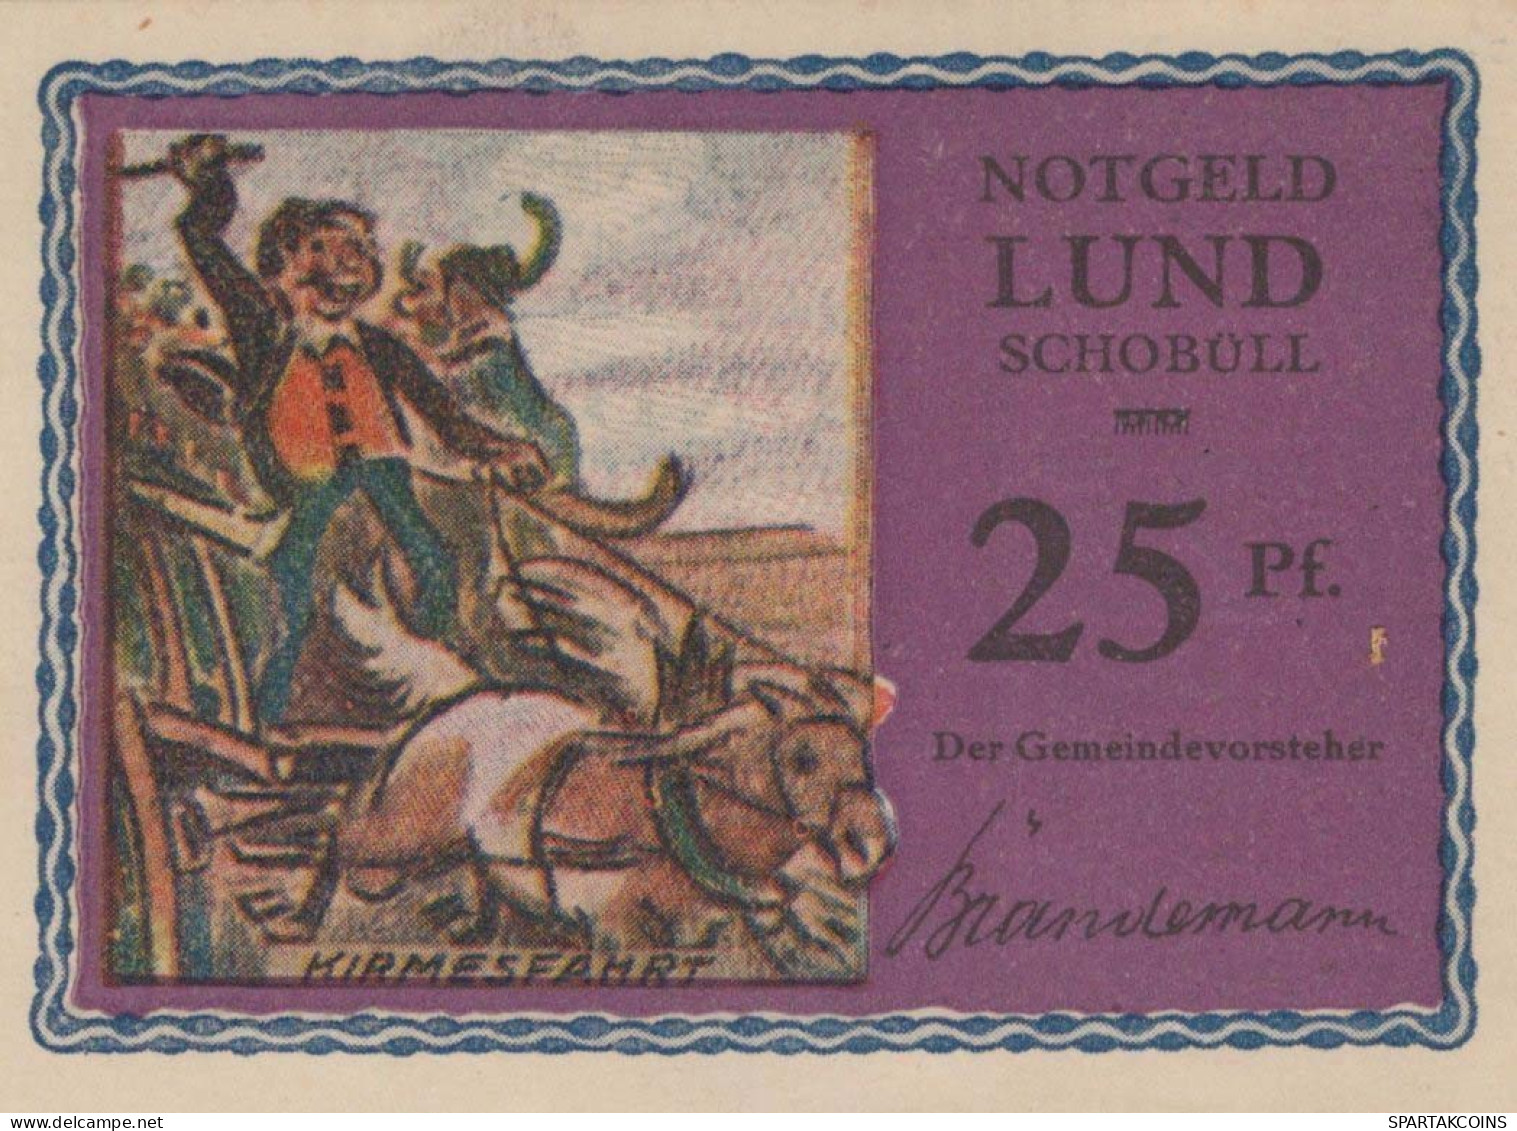 25 PFENNIG 1921/22 LUND-SCHOBÜLL SCHLESWIG HOLSTEIN UNC DEUTSCHLAND #PC668 - [11] Local Banknote Issues